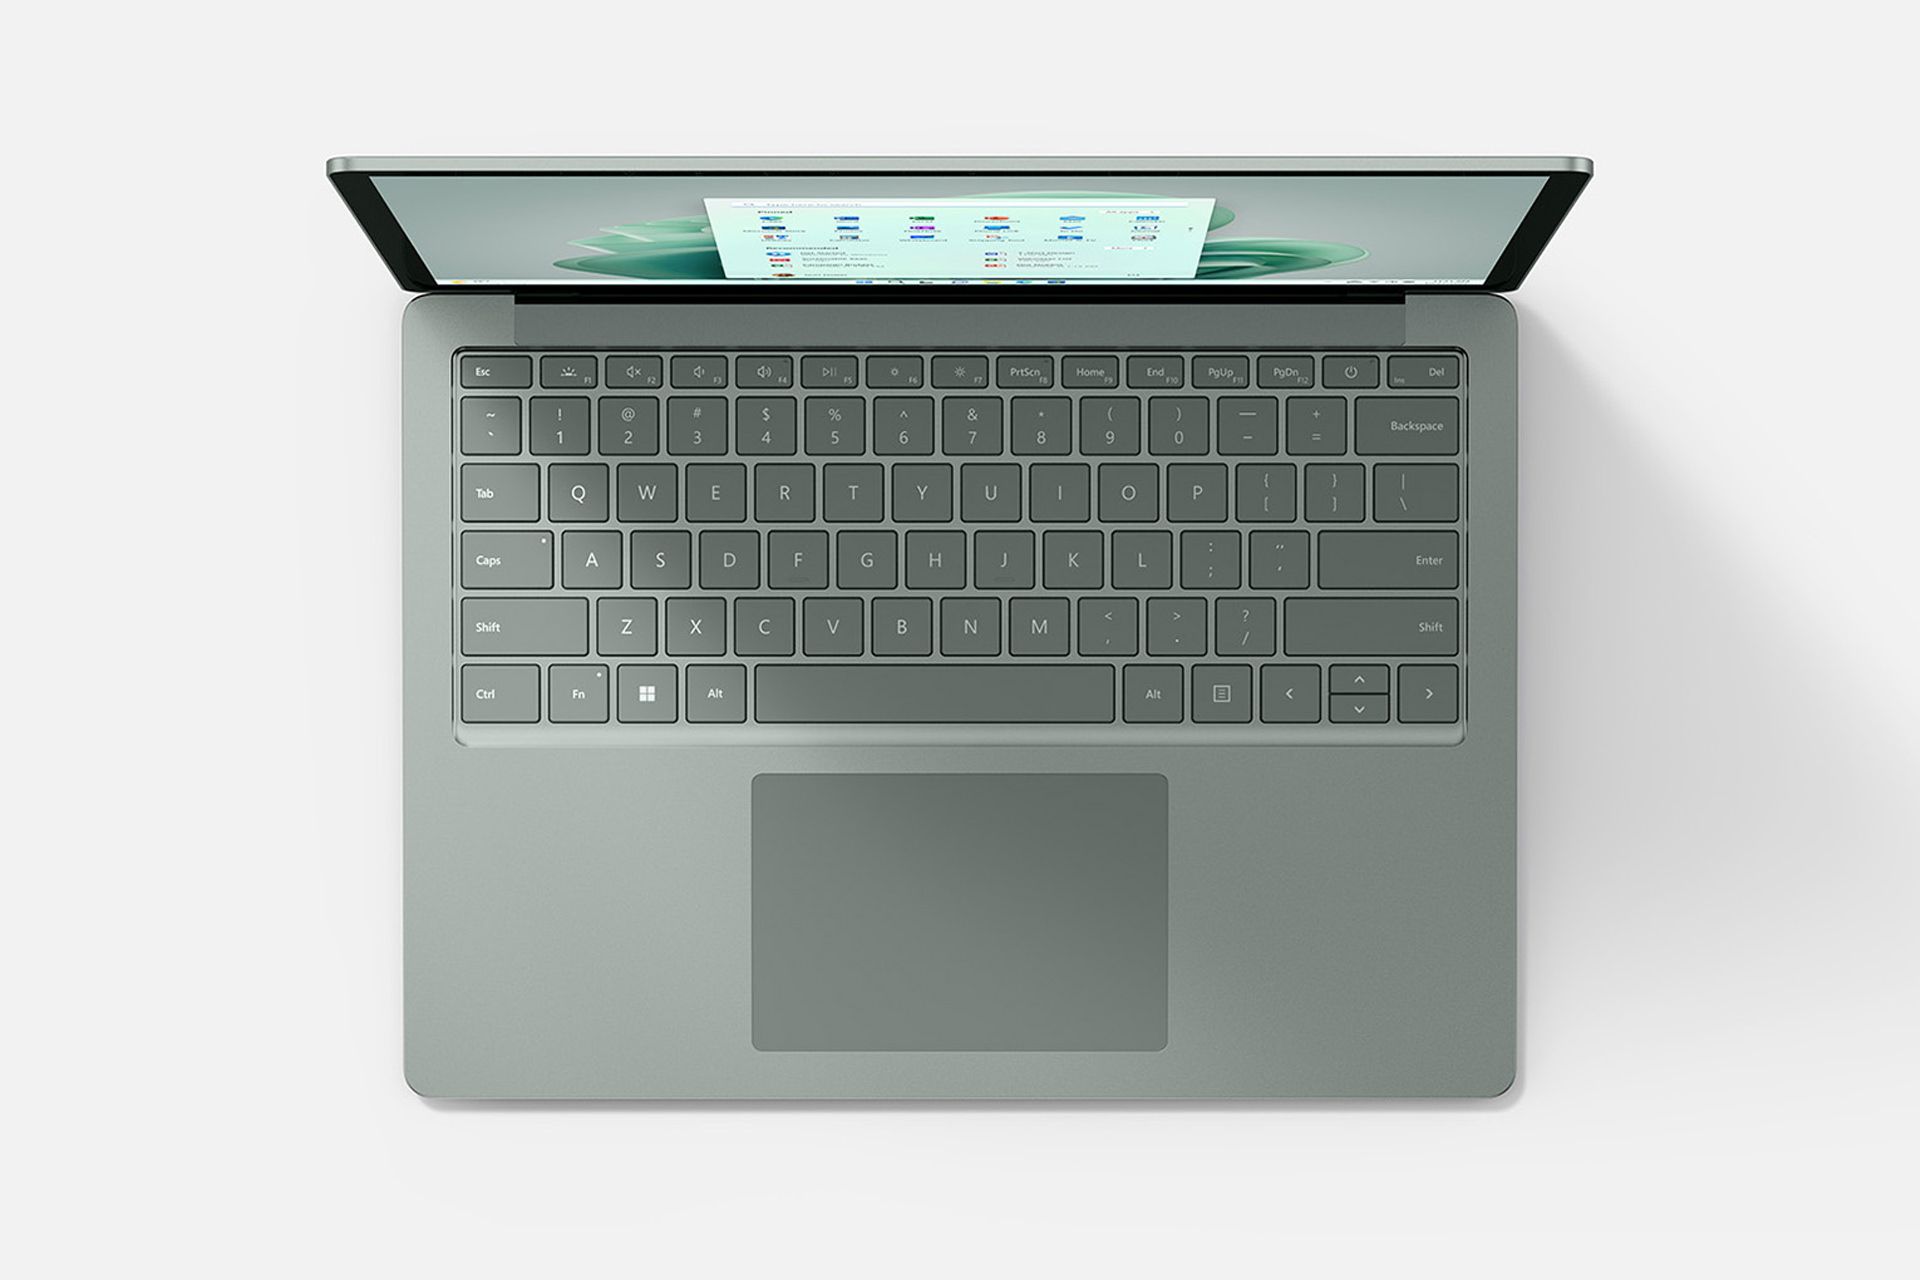 سرفیس لپ تاپ ۵ مایکروسافت Surface Laptop 5 سبز از نمای بالا